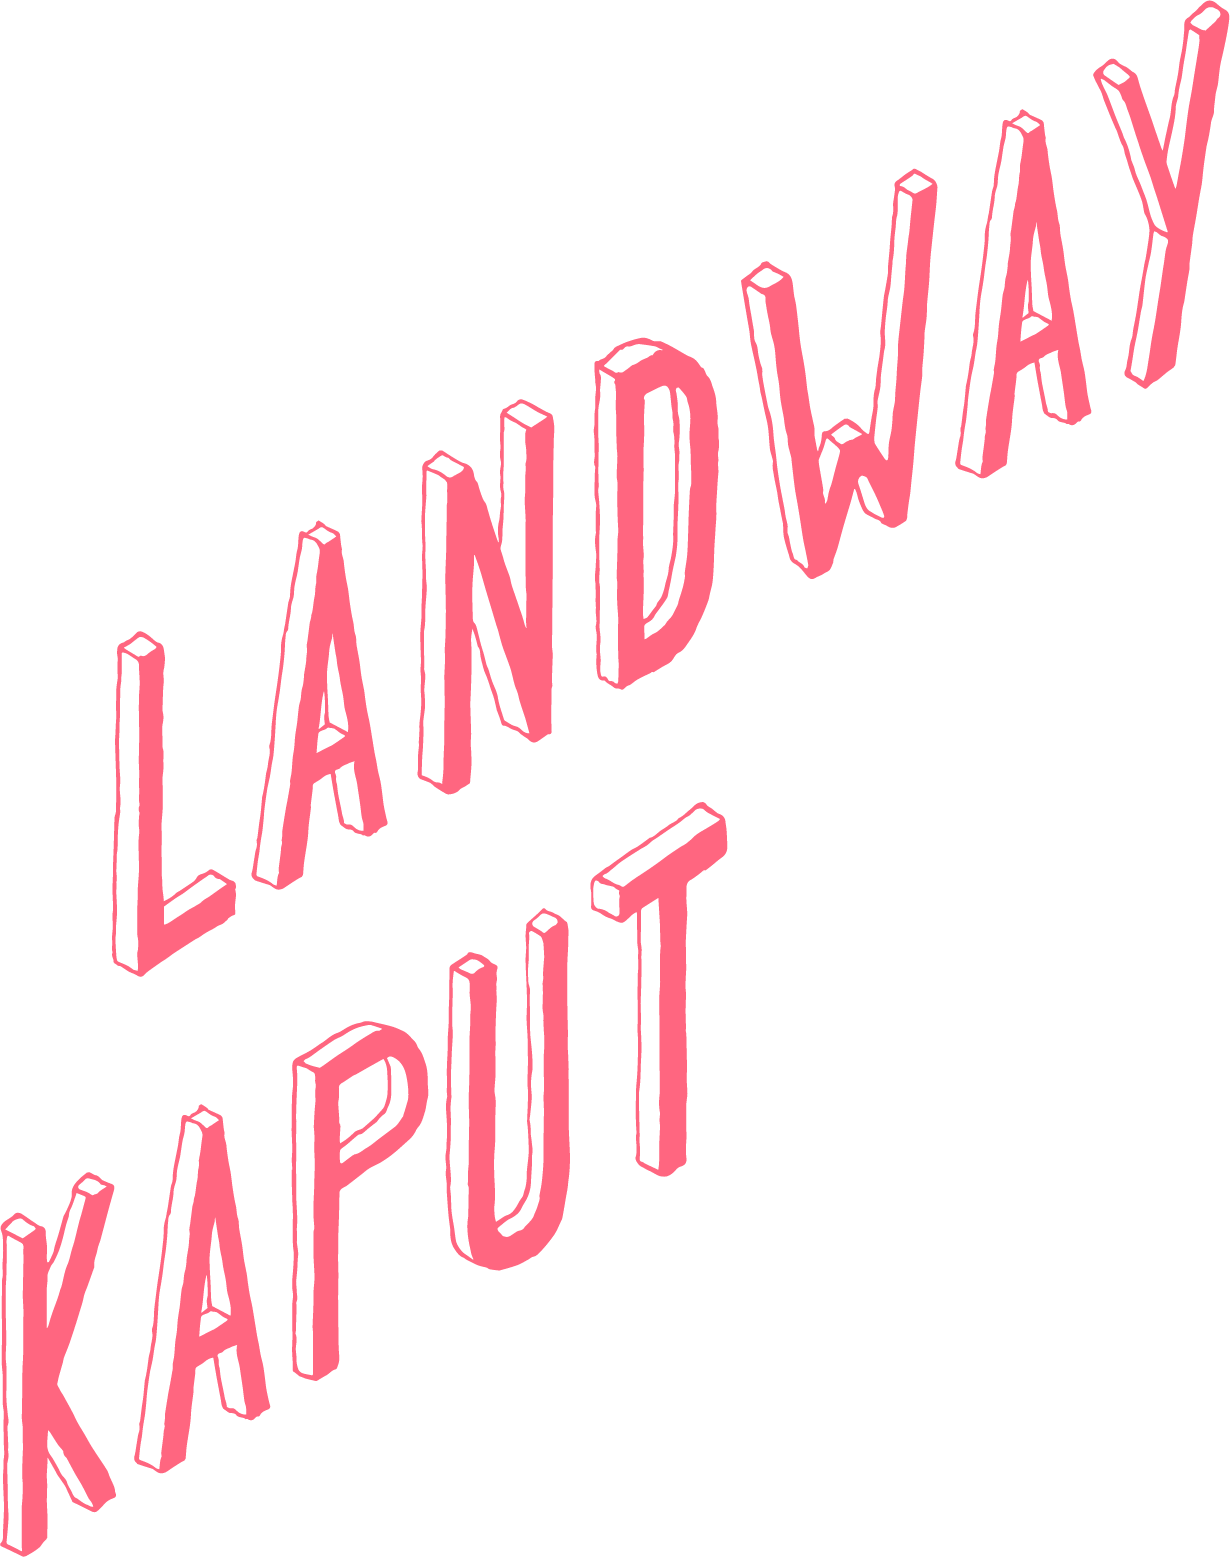 ° landway kaput